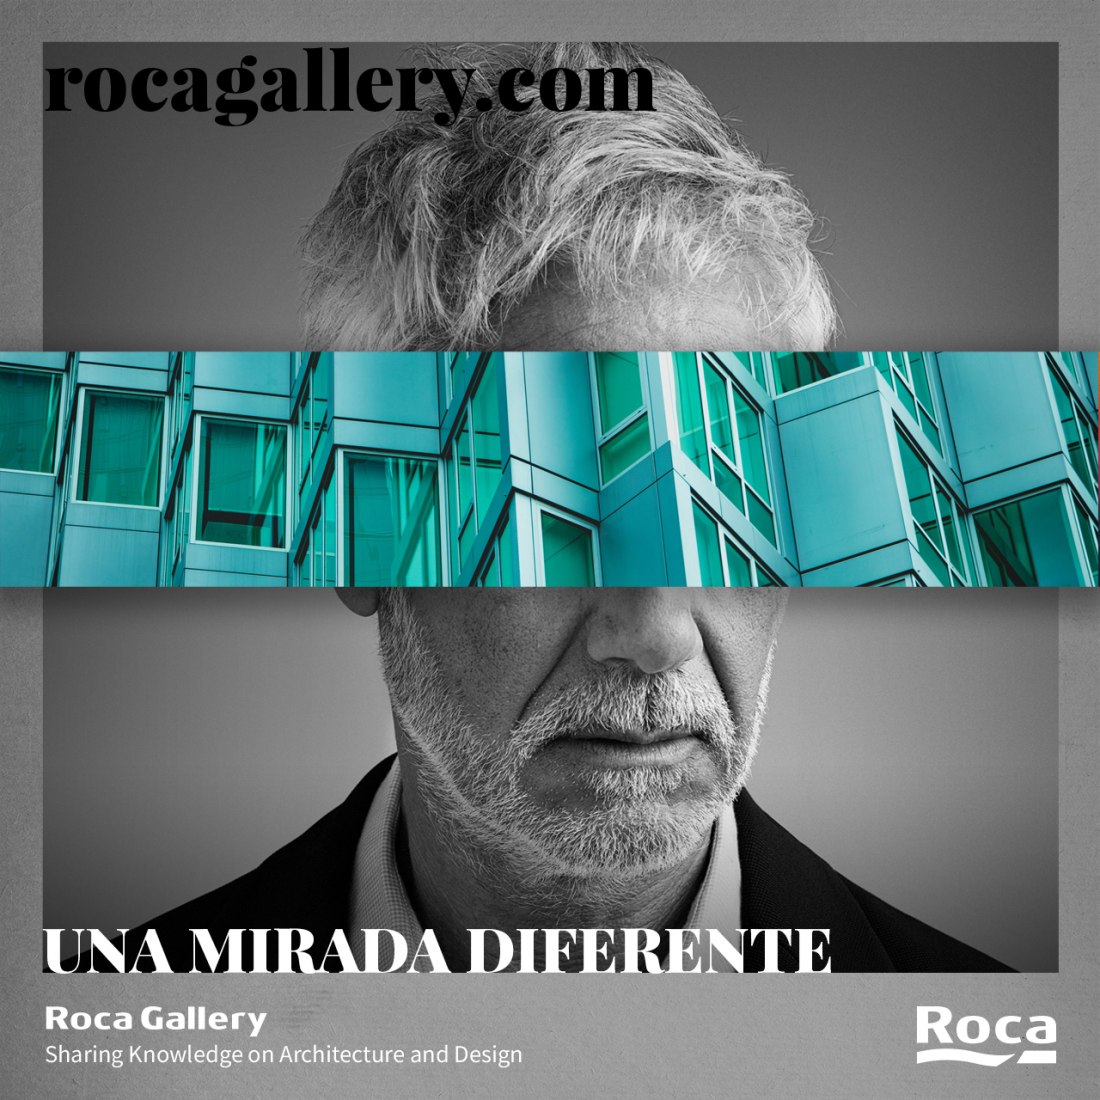 Nace una nueva plataforma digital de sector de la arquitectura y el diseño impulsada por Roca. Roca Gallery Web © Roca Gallery